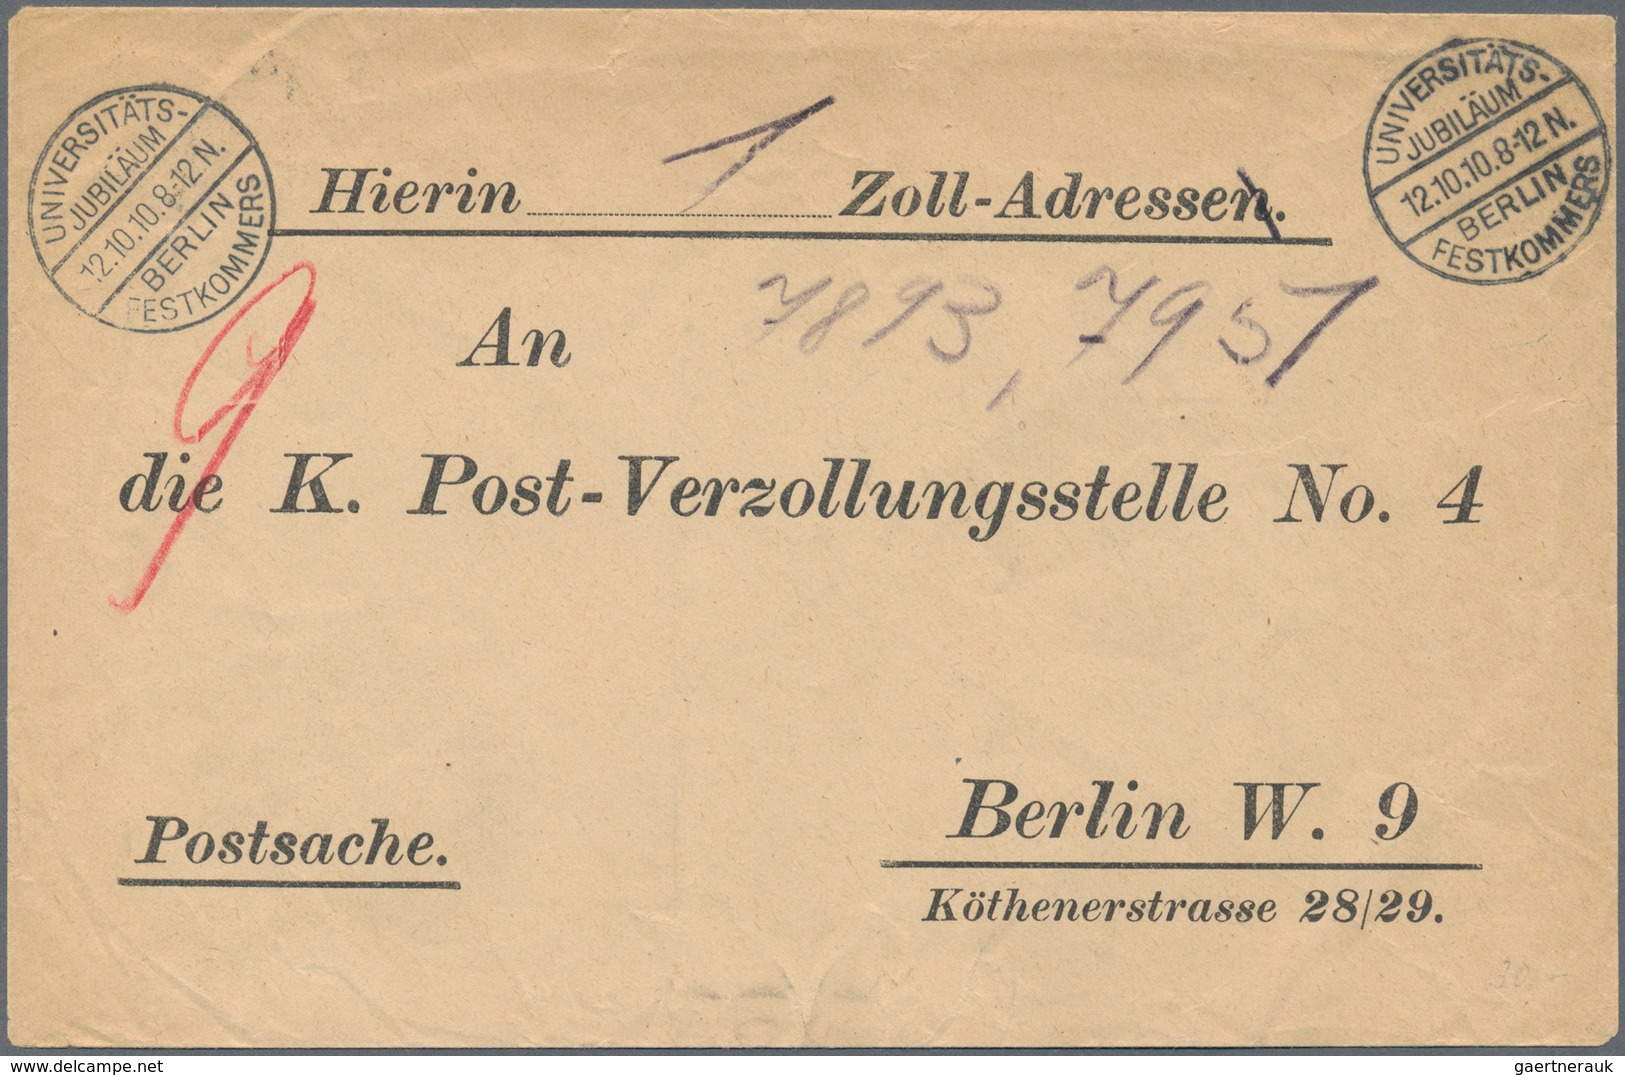 Deutsches Reich - Stempel: 1910, Berlin "UNIVERSITÄTS JUBILÄUM FESTKOMMERS 12.10." 2x Sonderstempel - Macchine Per Obliterare (EMA)